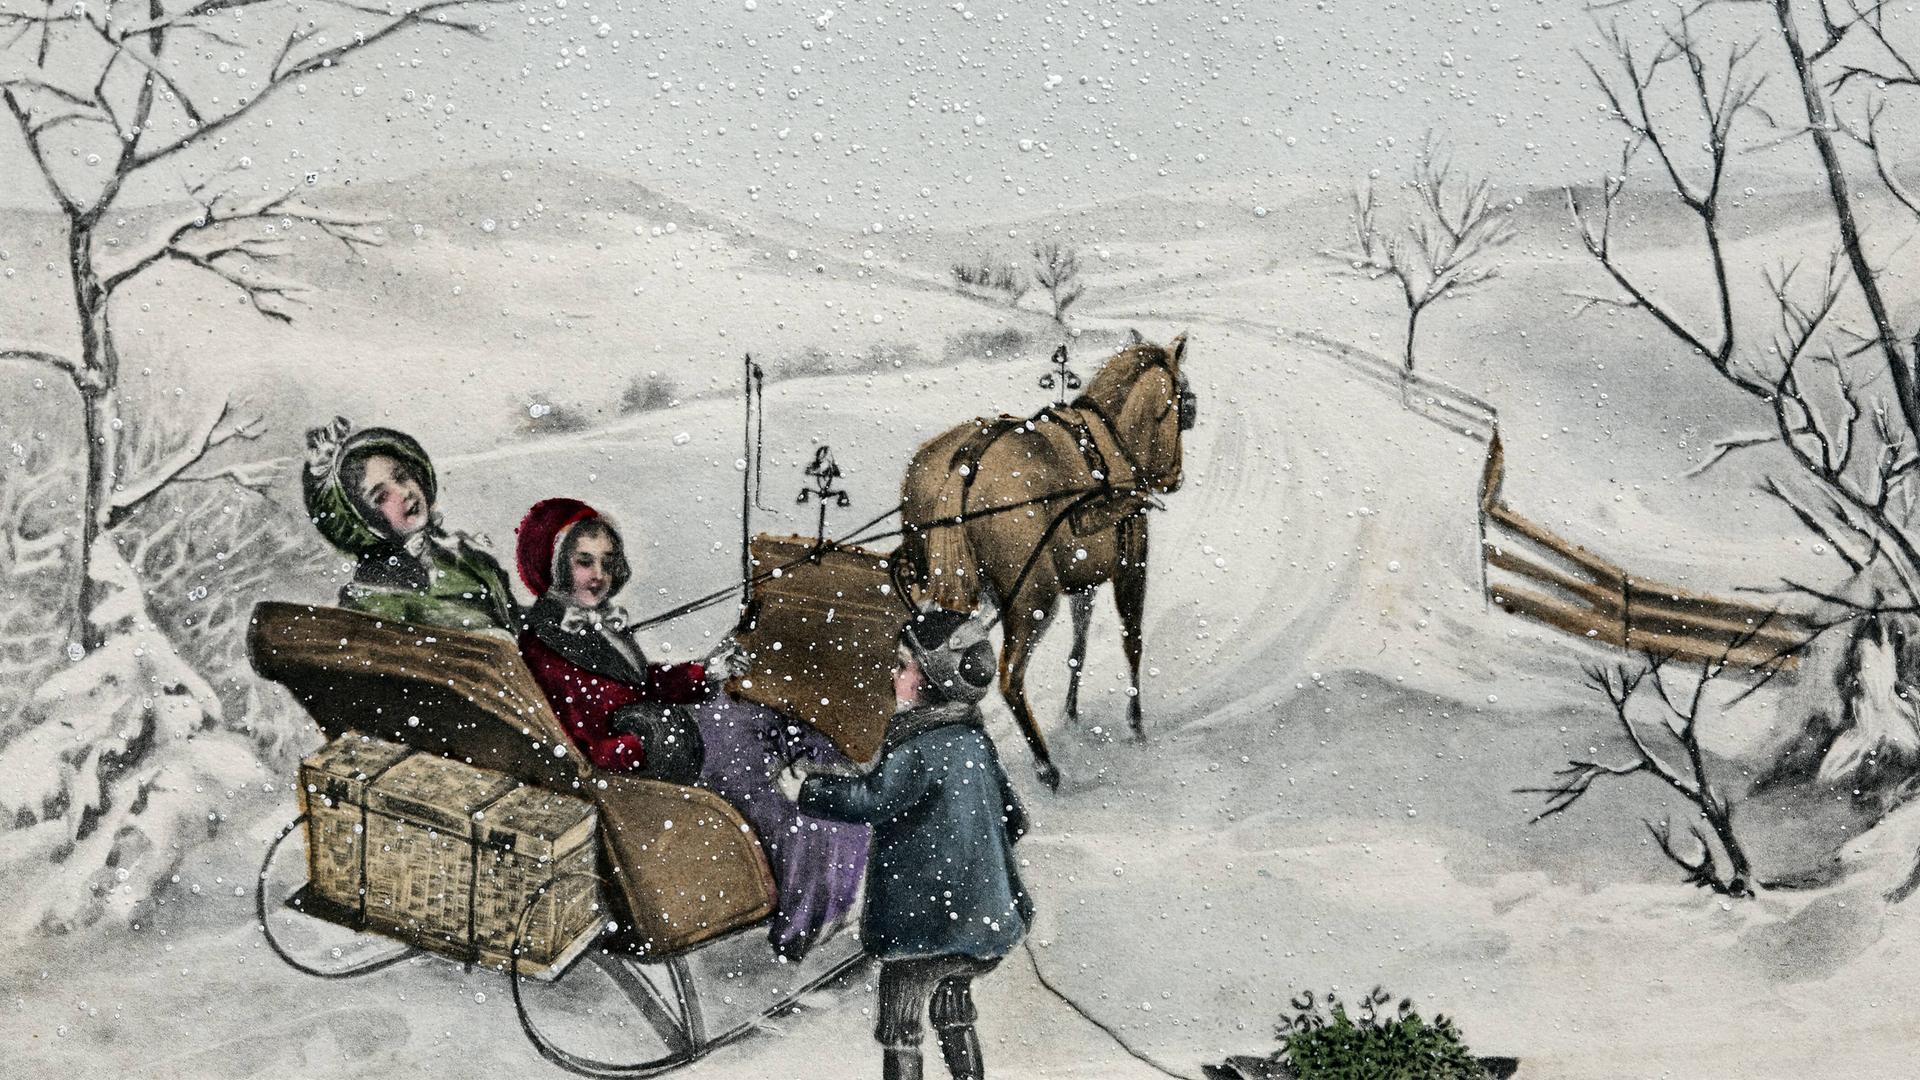 Eine historische Postkarte (um 1900) mit Neujahrsgruß zeigt Kinder auf einem Pferdeschlitten im Schnee.